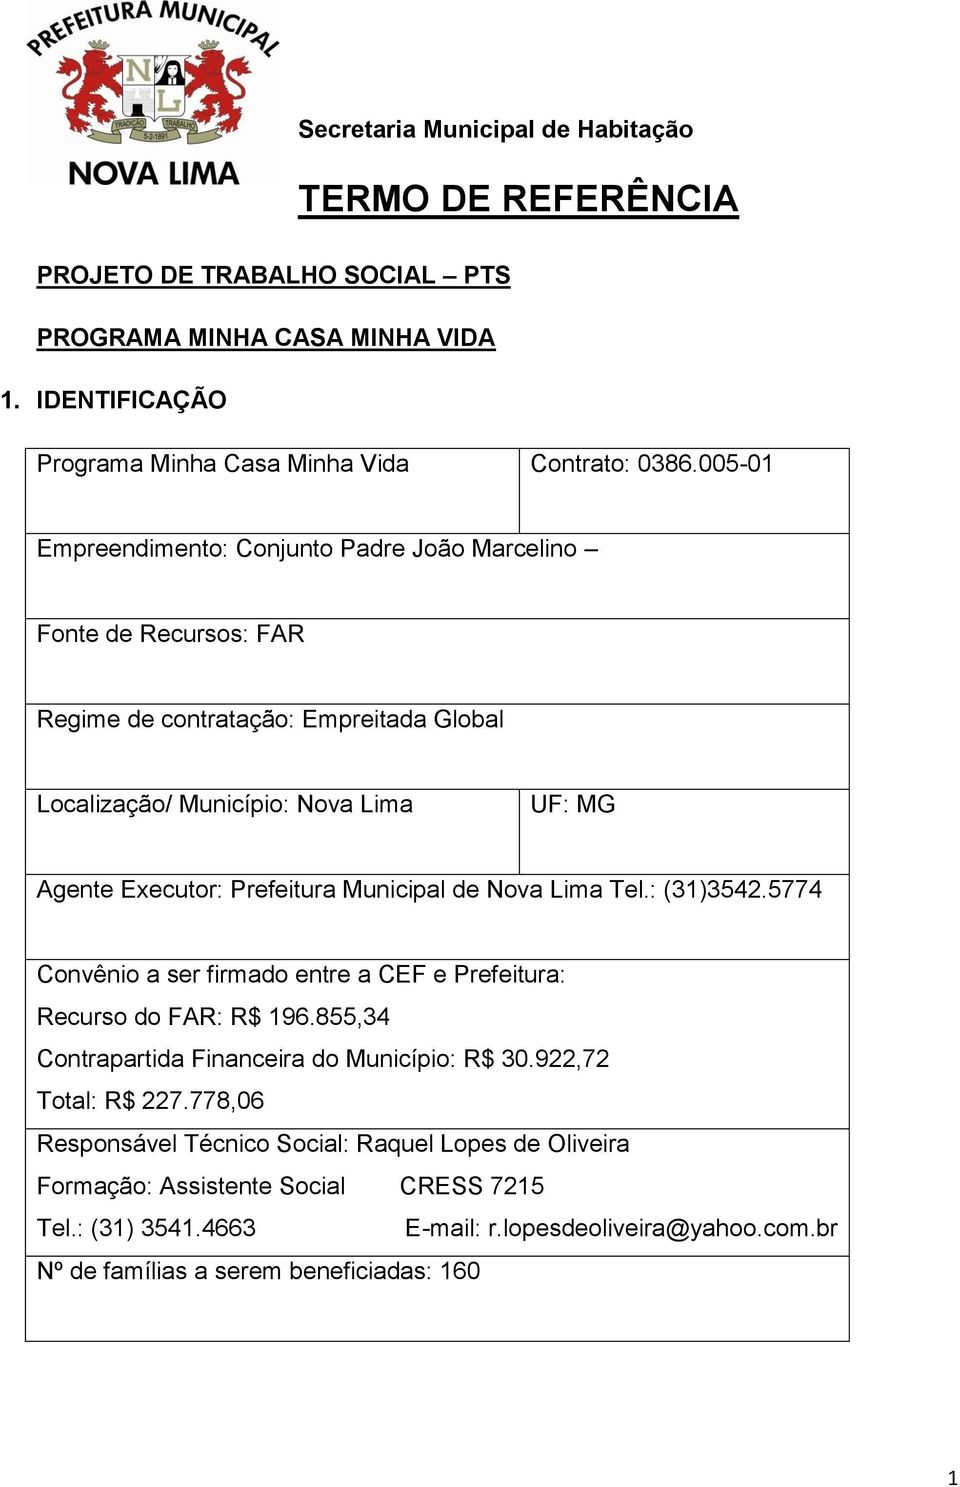 Municipal de Nova Lima Tel.: (31)3542.5774 Convênio a ser firmado entre a CEF e Prefeitura: Recurso do FAR: R$ 196.855,34 Contrapartida Financeira do Município: R$ 30.922,72 Total: R$ 227.